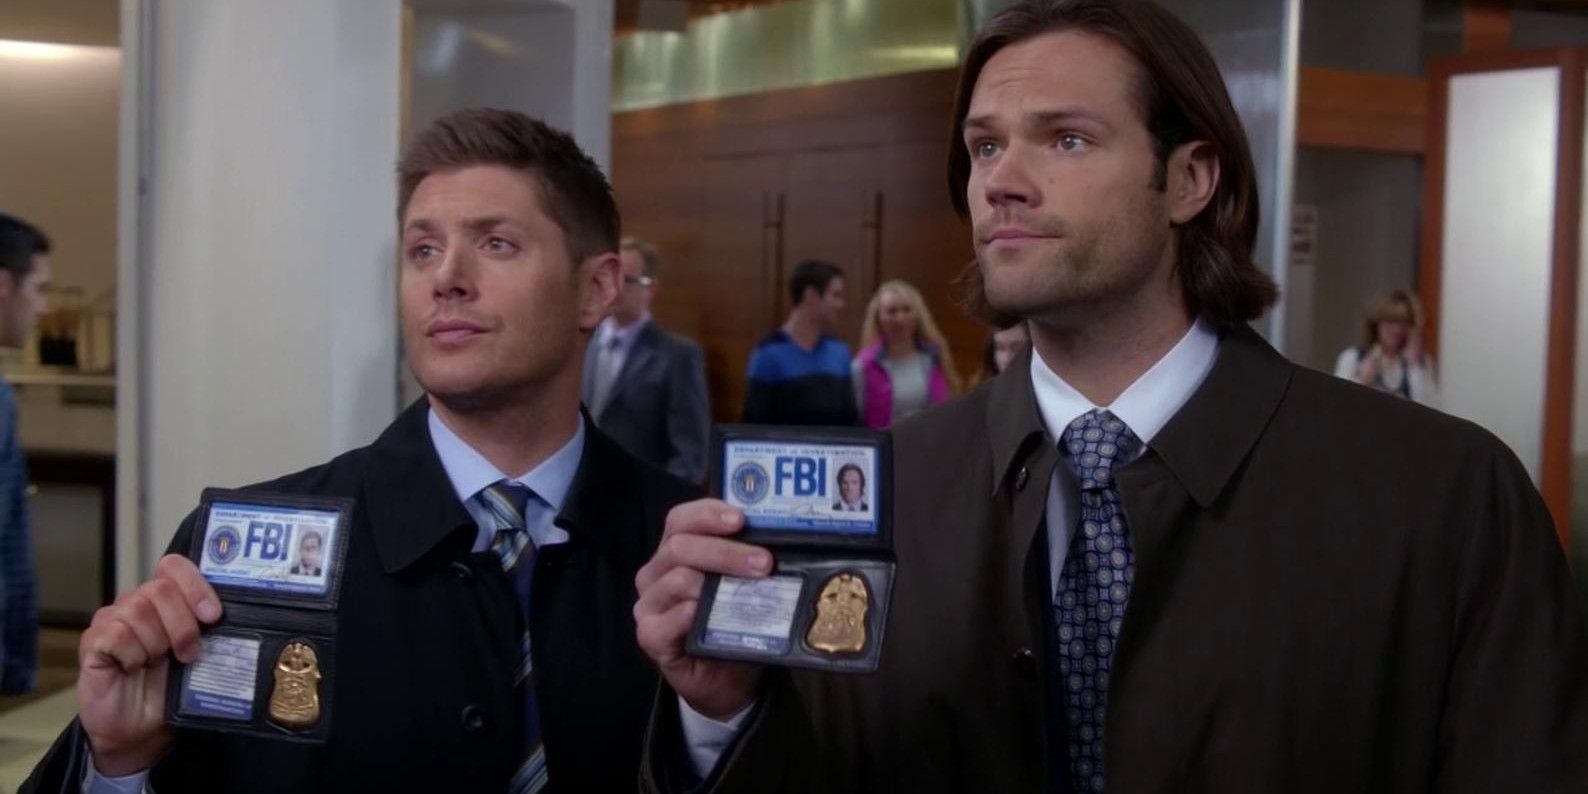 Dean Sam FBI badges 1